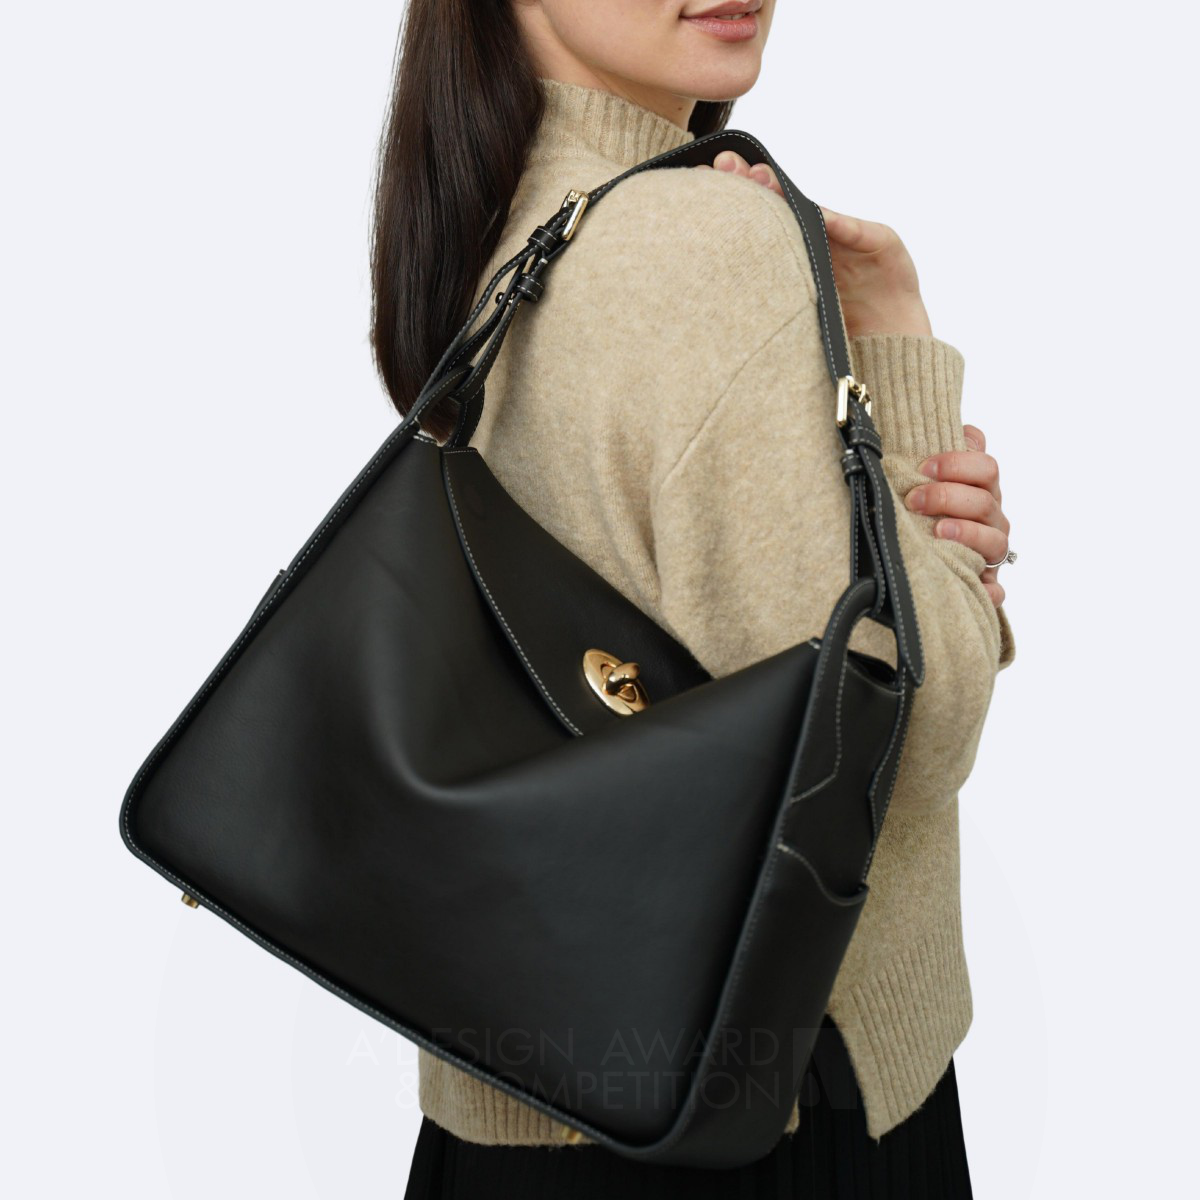 WIT : Le sac qui redéfinit le style de vie moderne